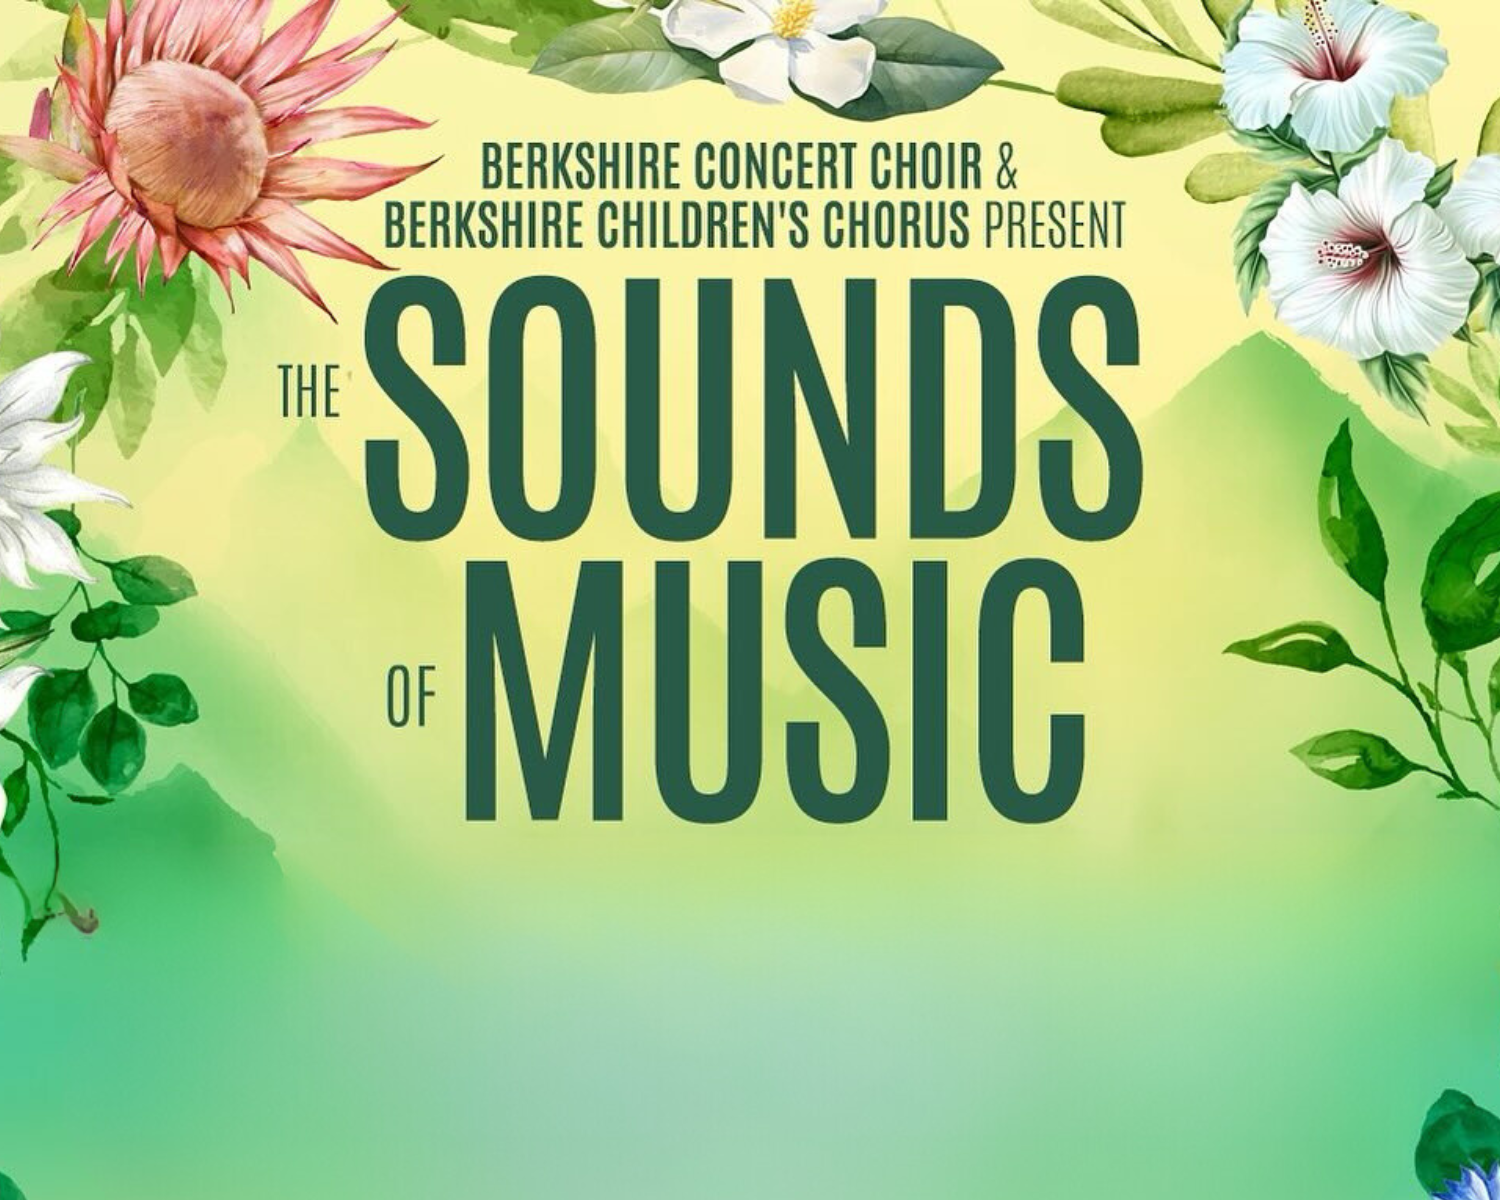 Berkshire Concert Choir: The Sounds of Music